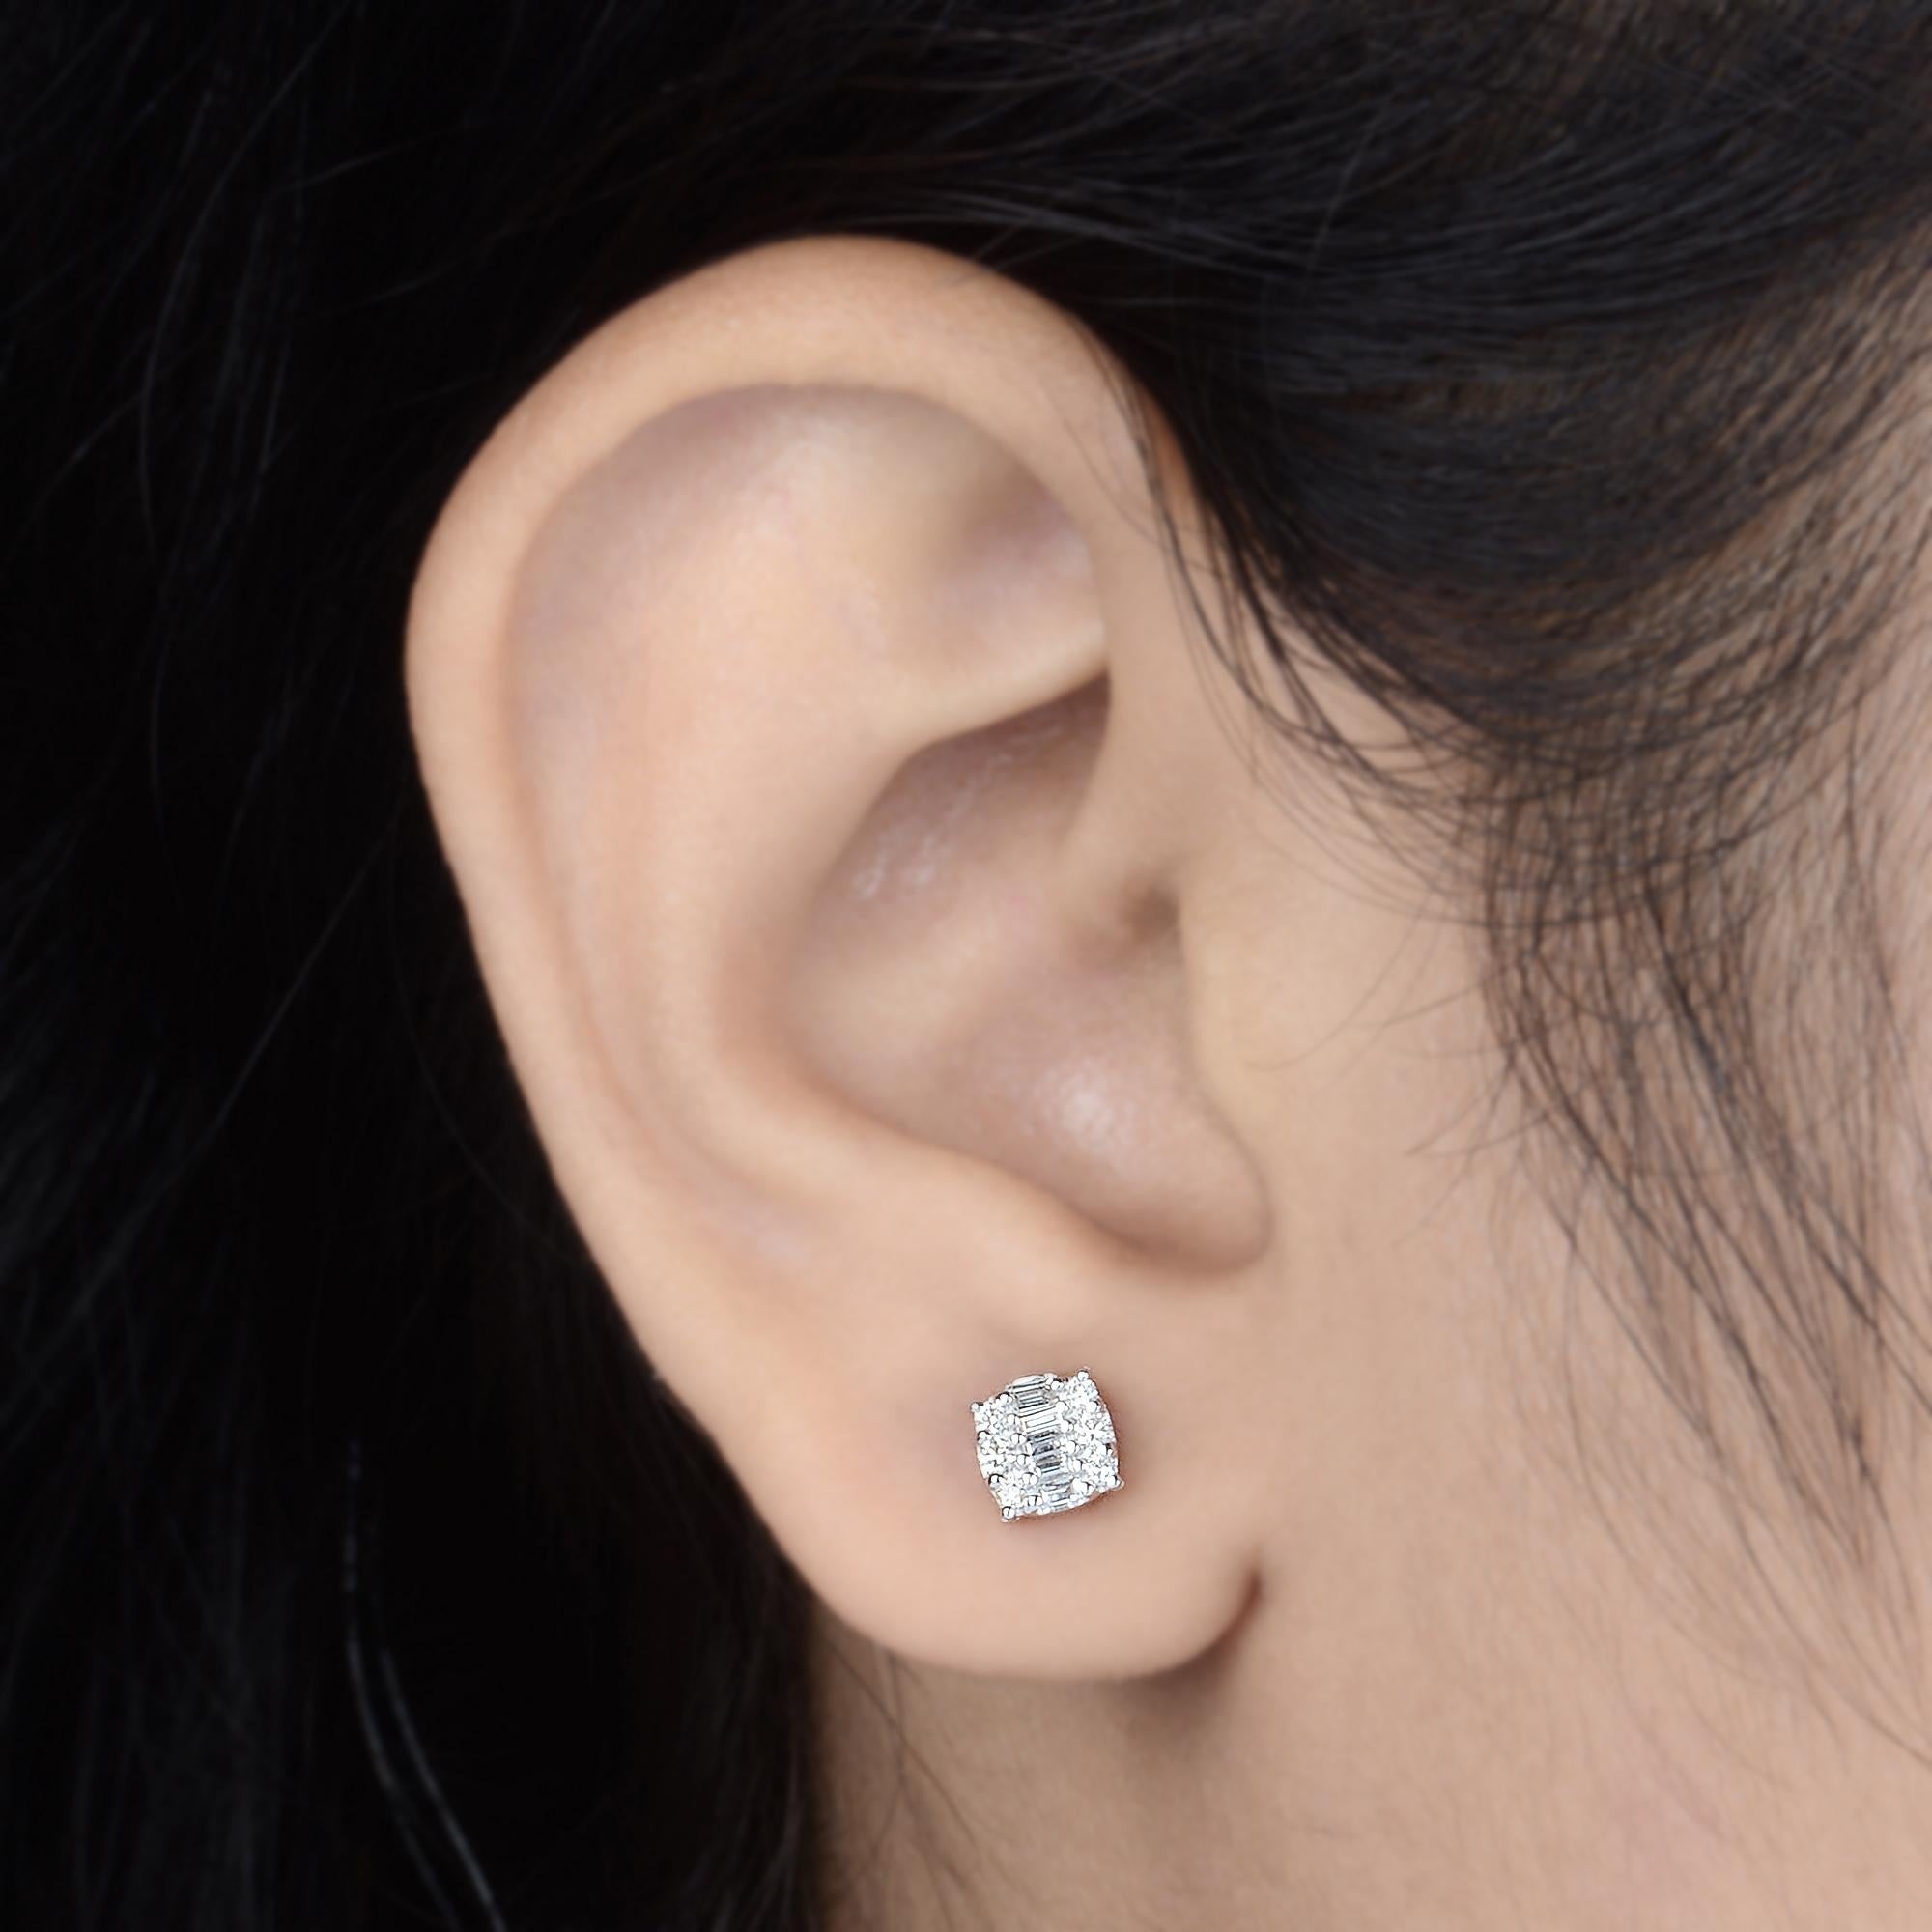 Baguette Cut 0.2 Carat SI Clarity HI Color Baguette Diamond Stud Earrings 10 Karat White Gold For Sale